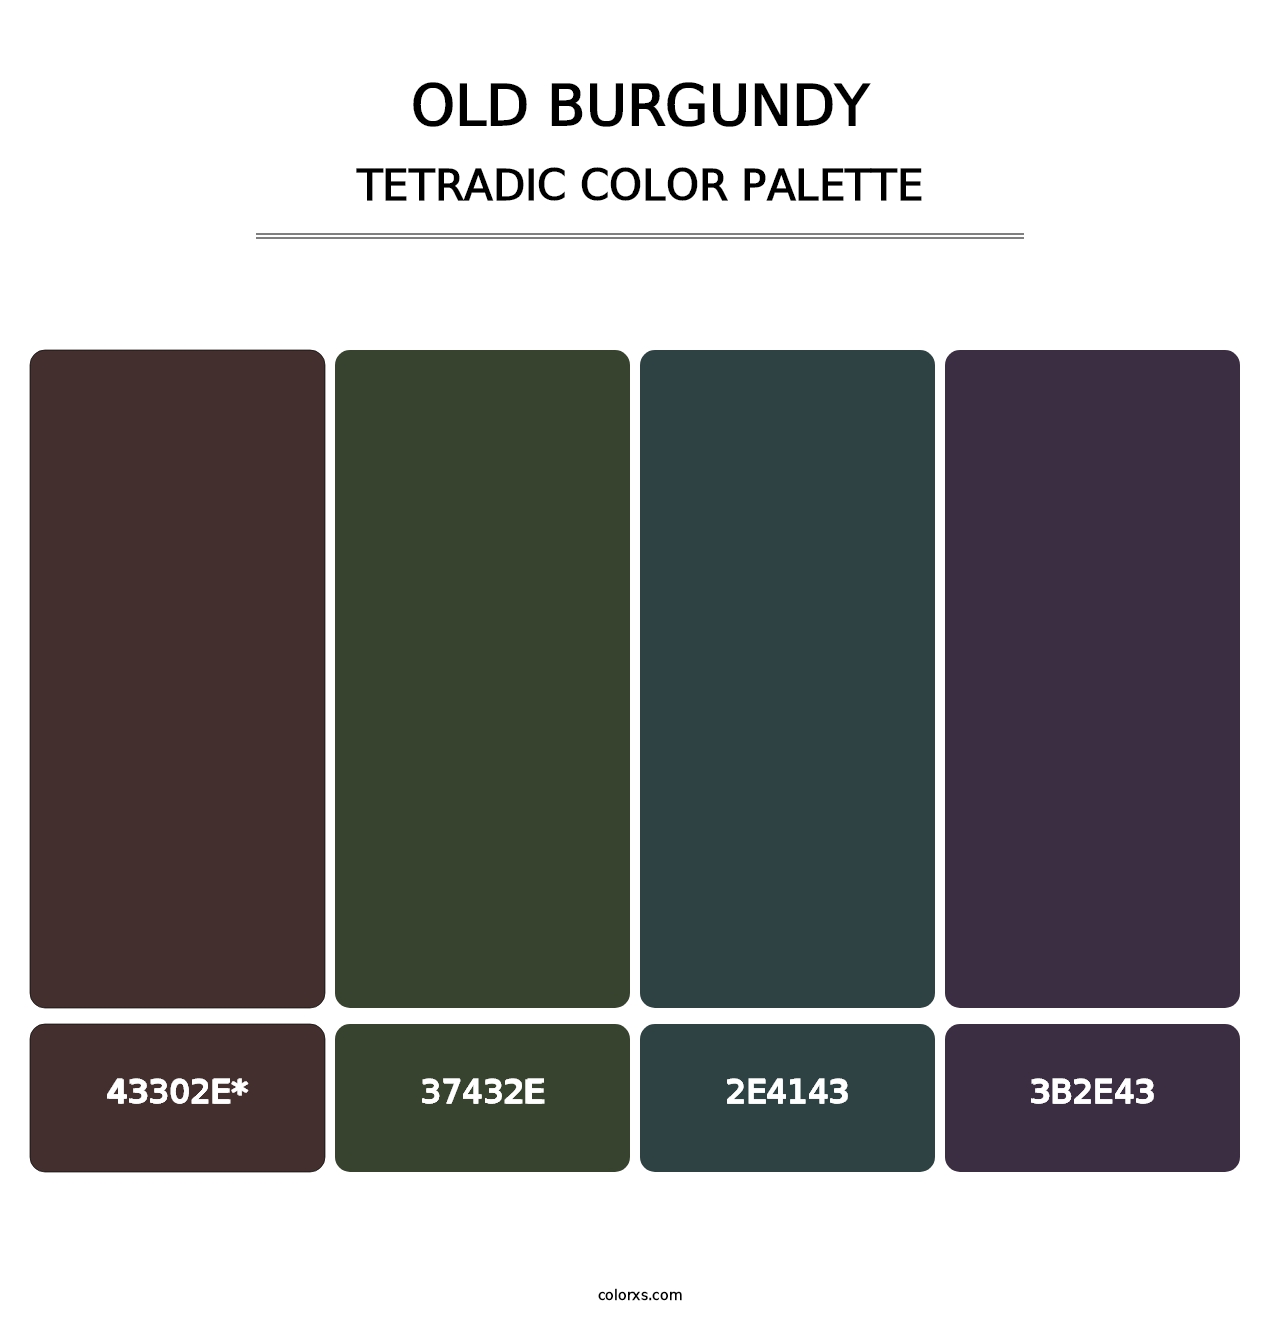 Old Burgundy - Tetradic Color Palette